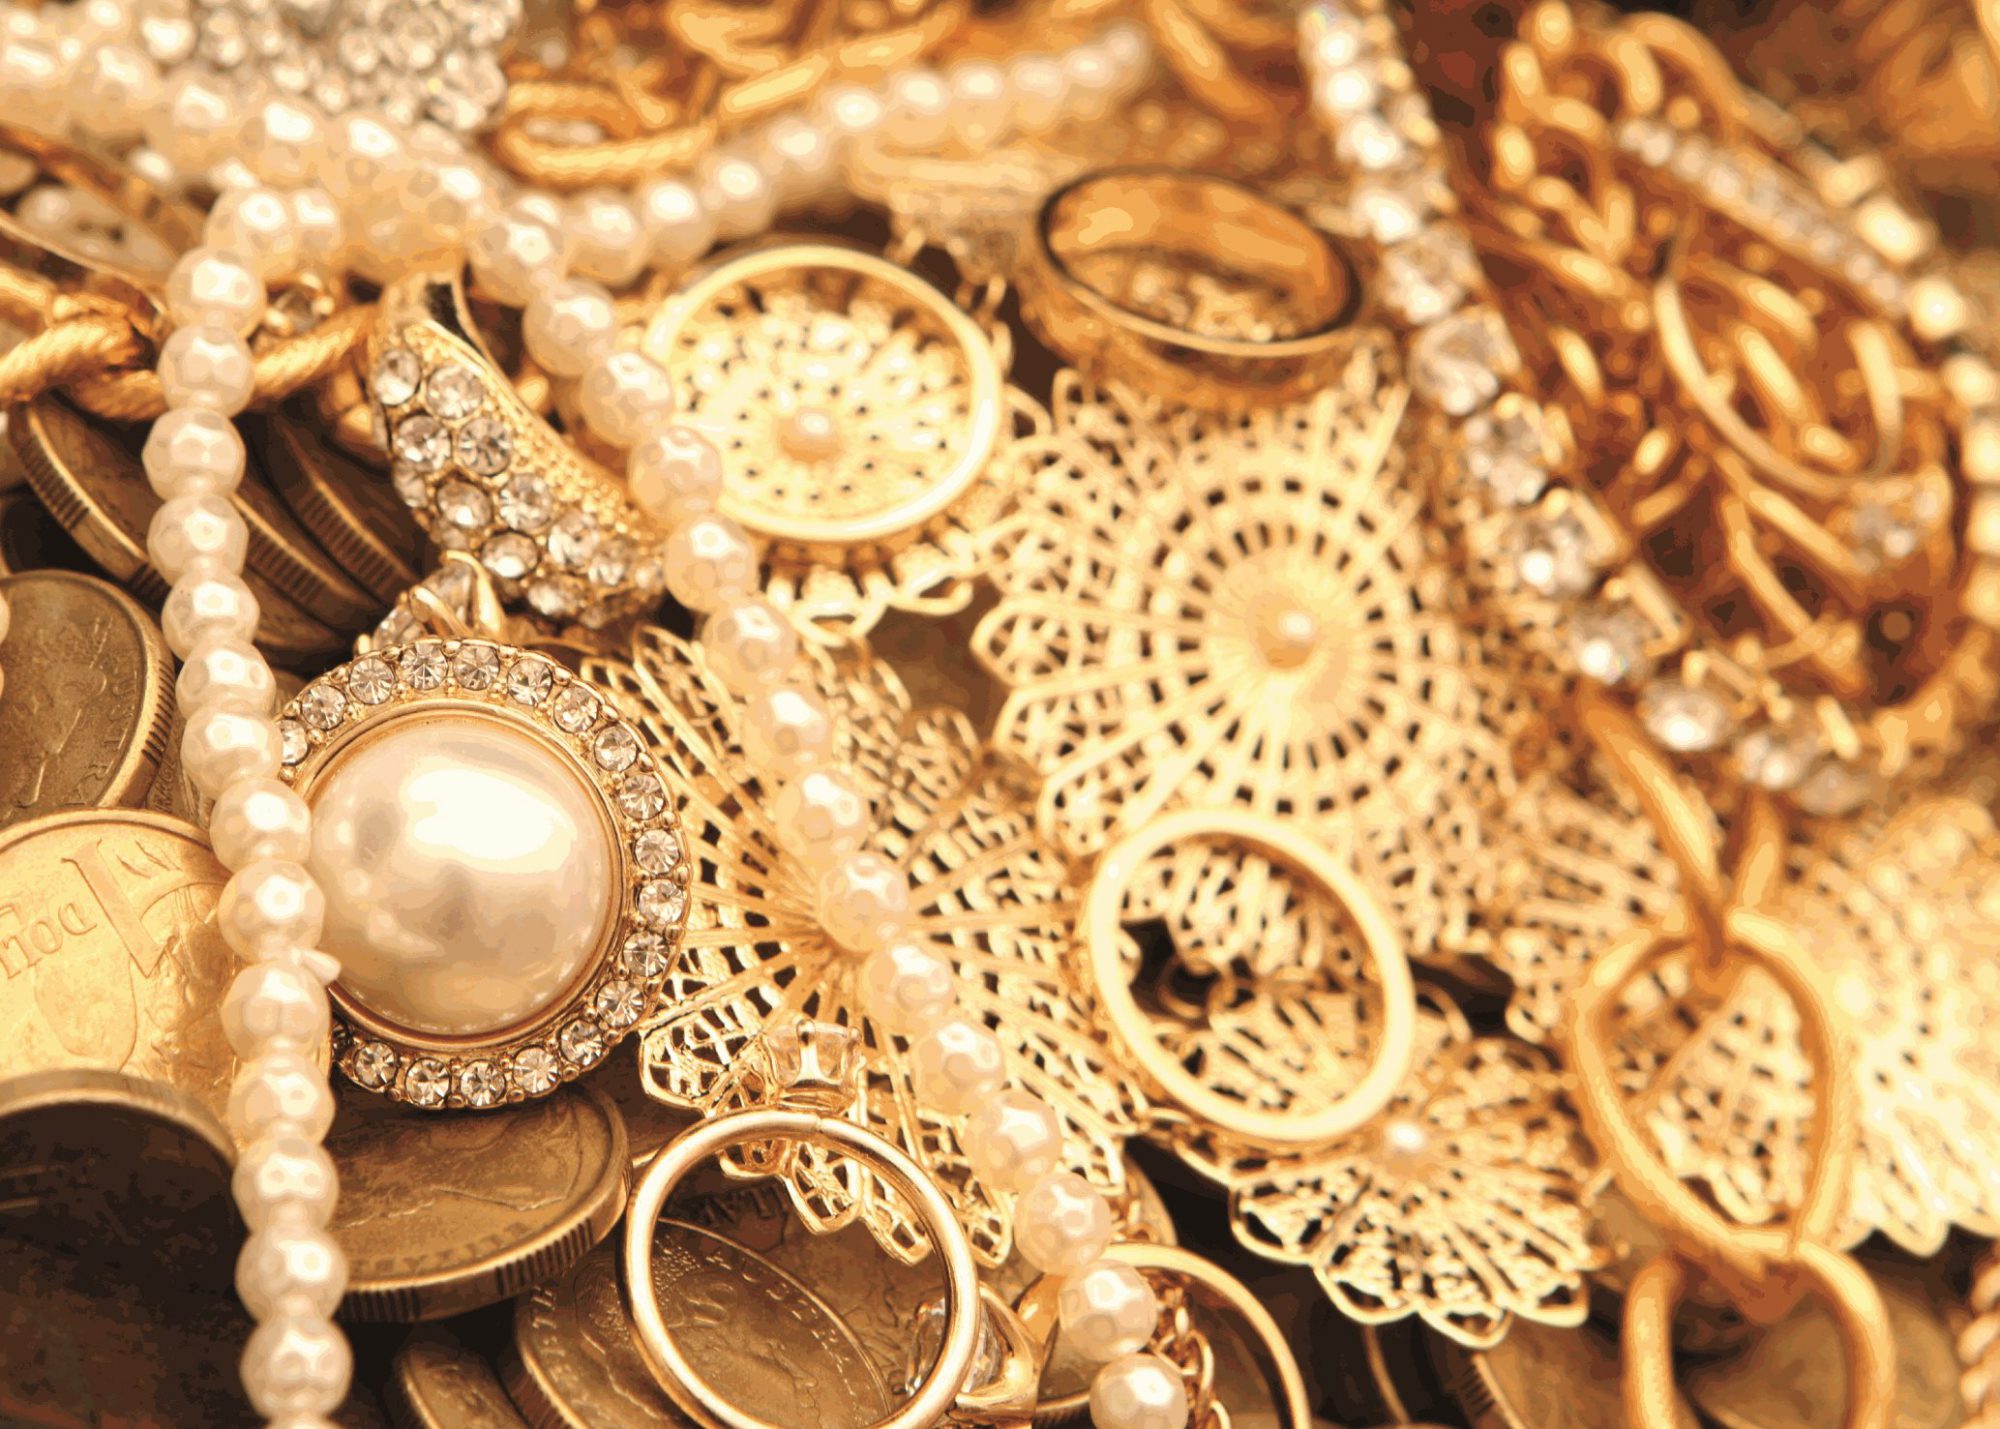 Gouden sieraden verkopen